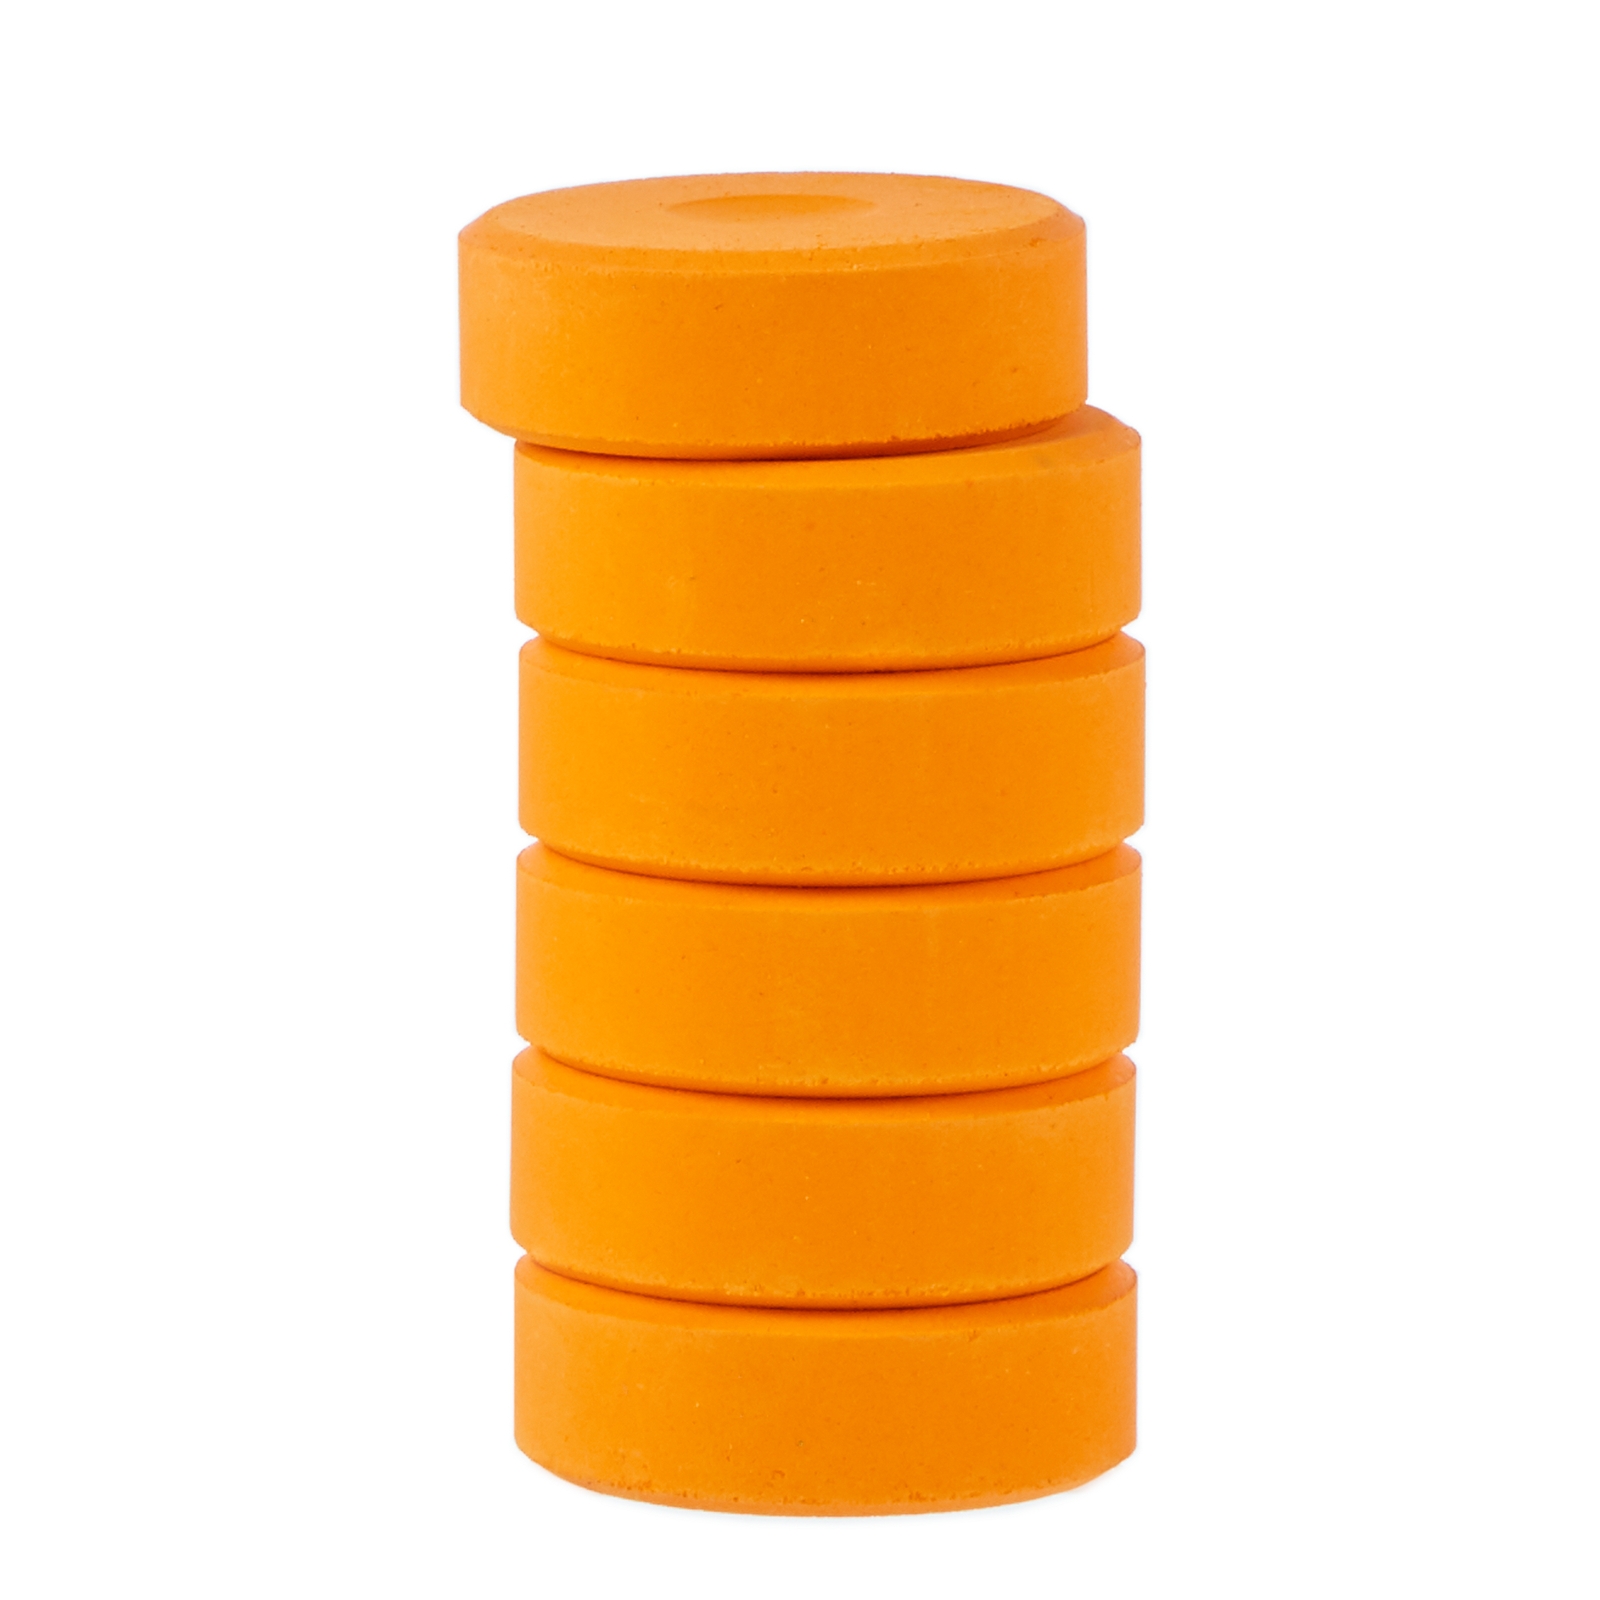 Colour Blocks - Orange